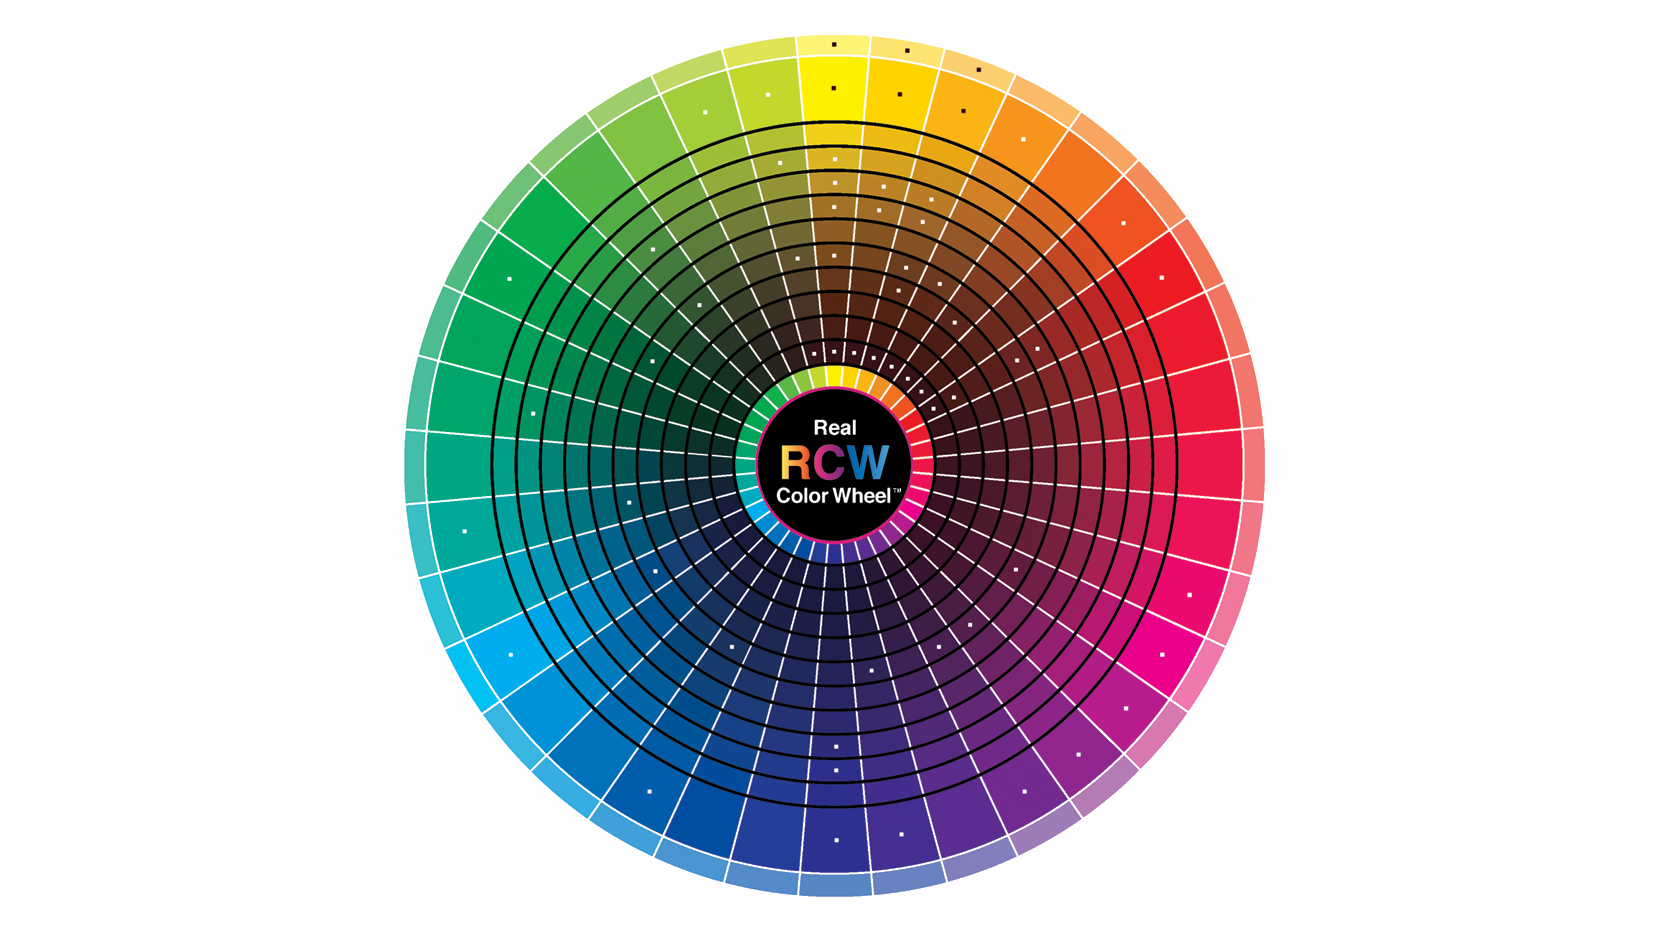 Влияние цвета на дизайн: психология цветов в интерьере, дизайне и брендировании